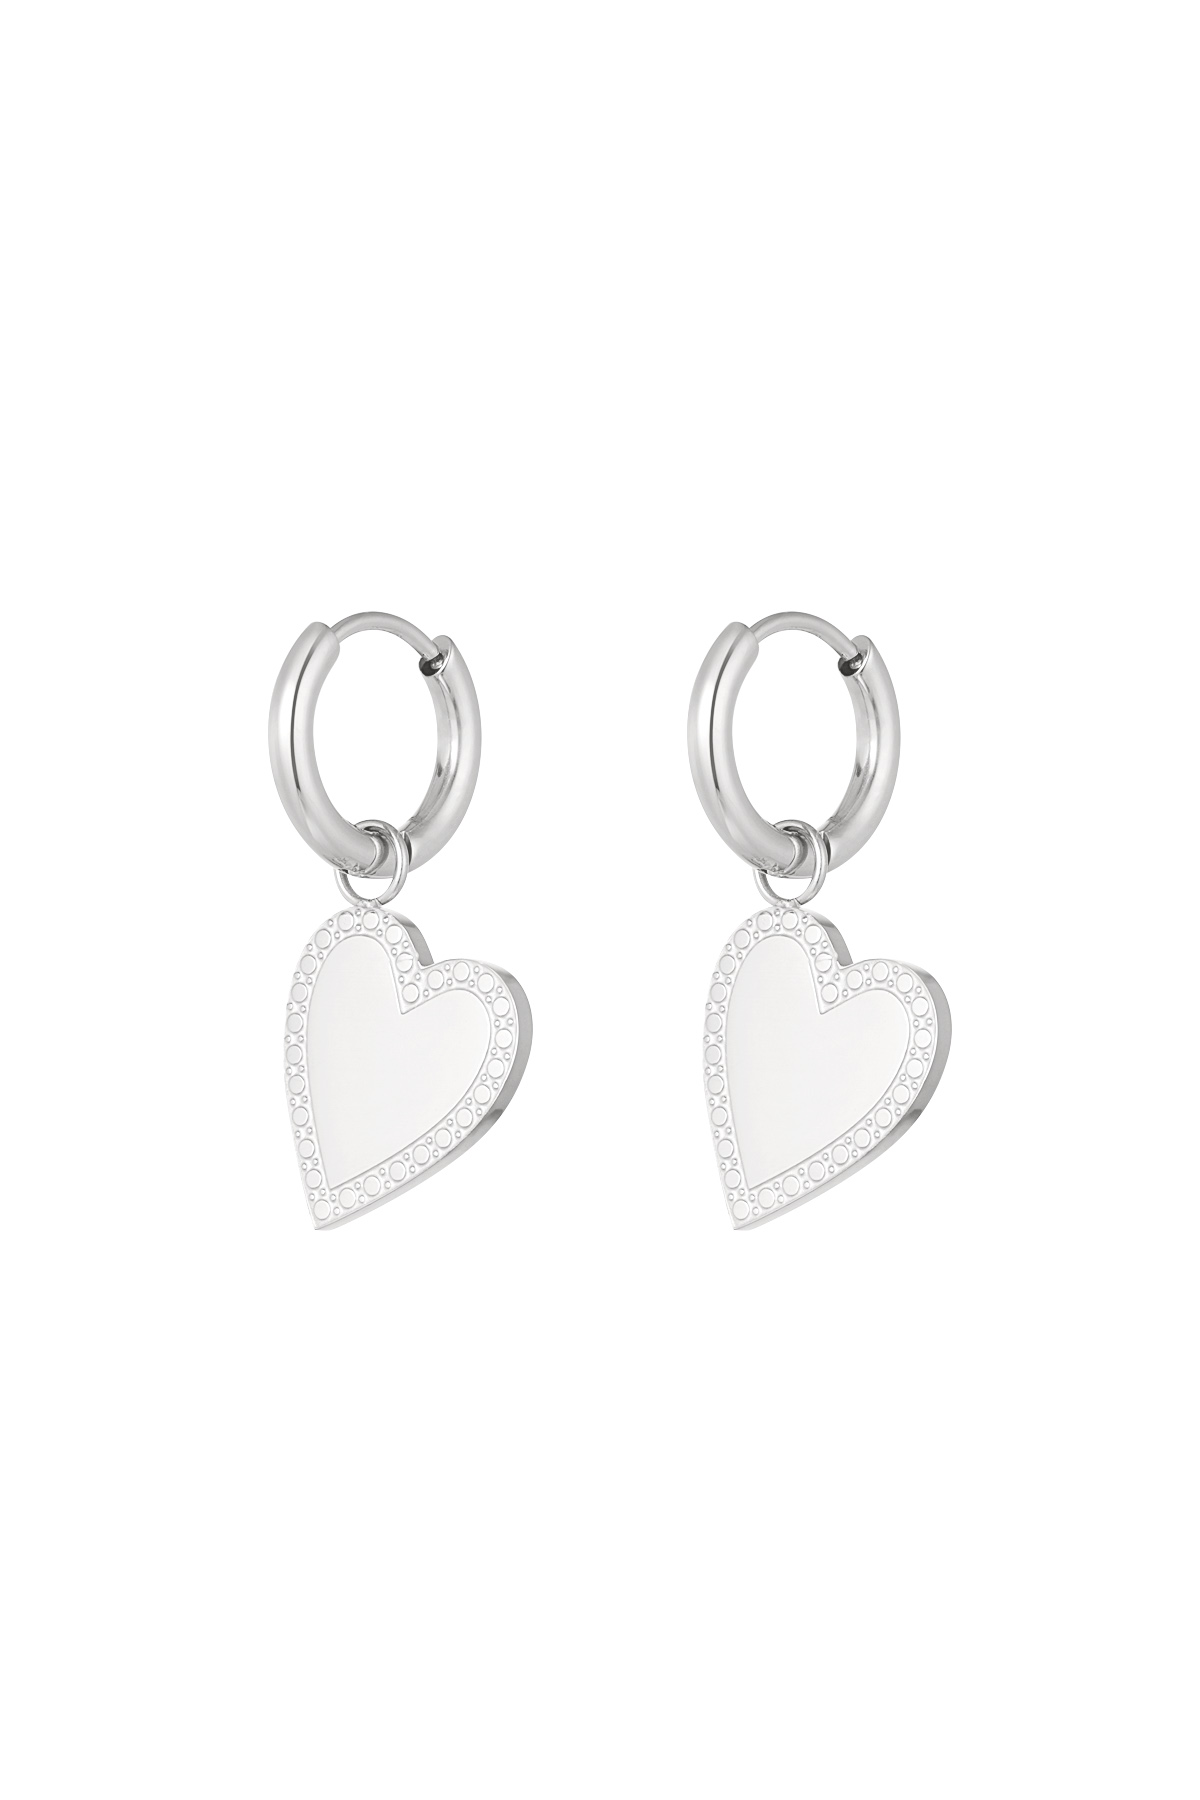 Earrings minimalist elegant heart - silver